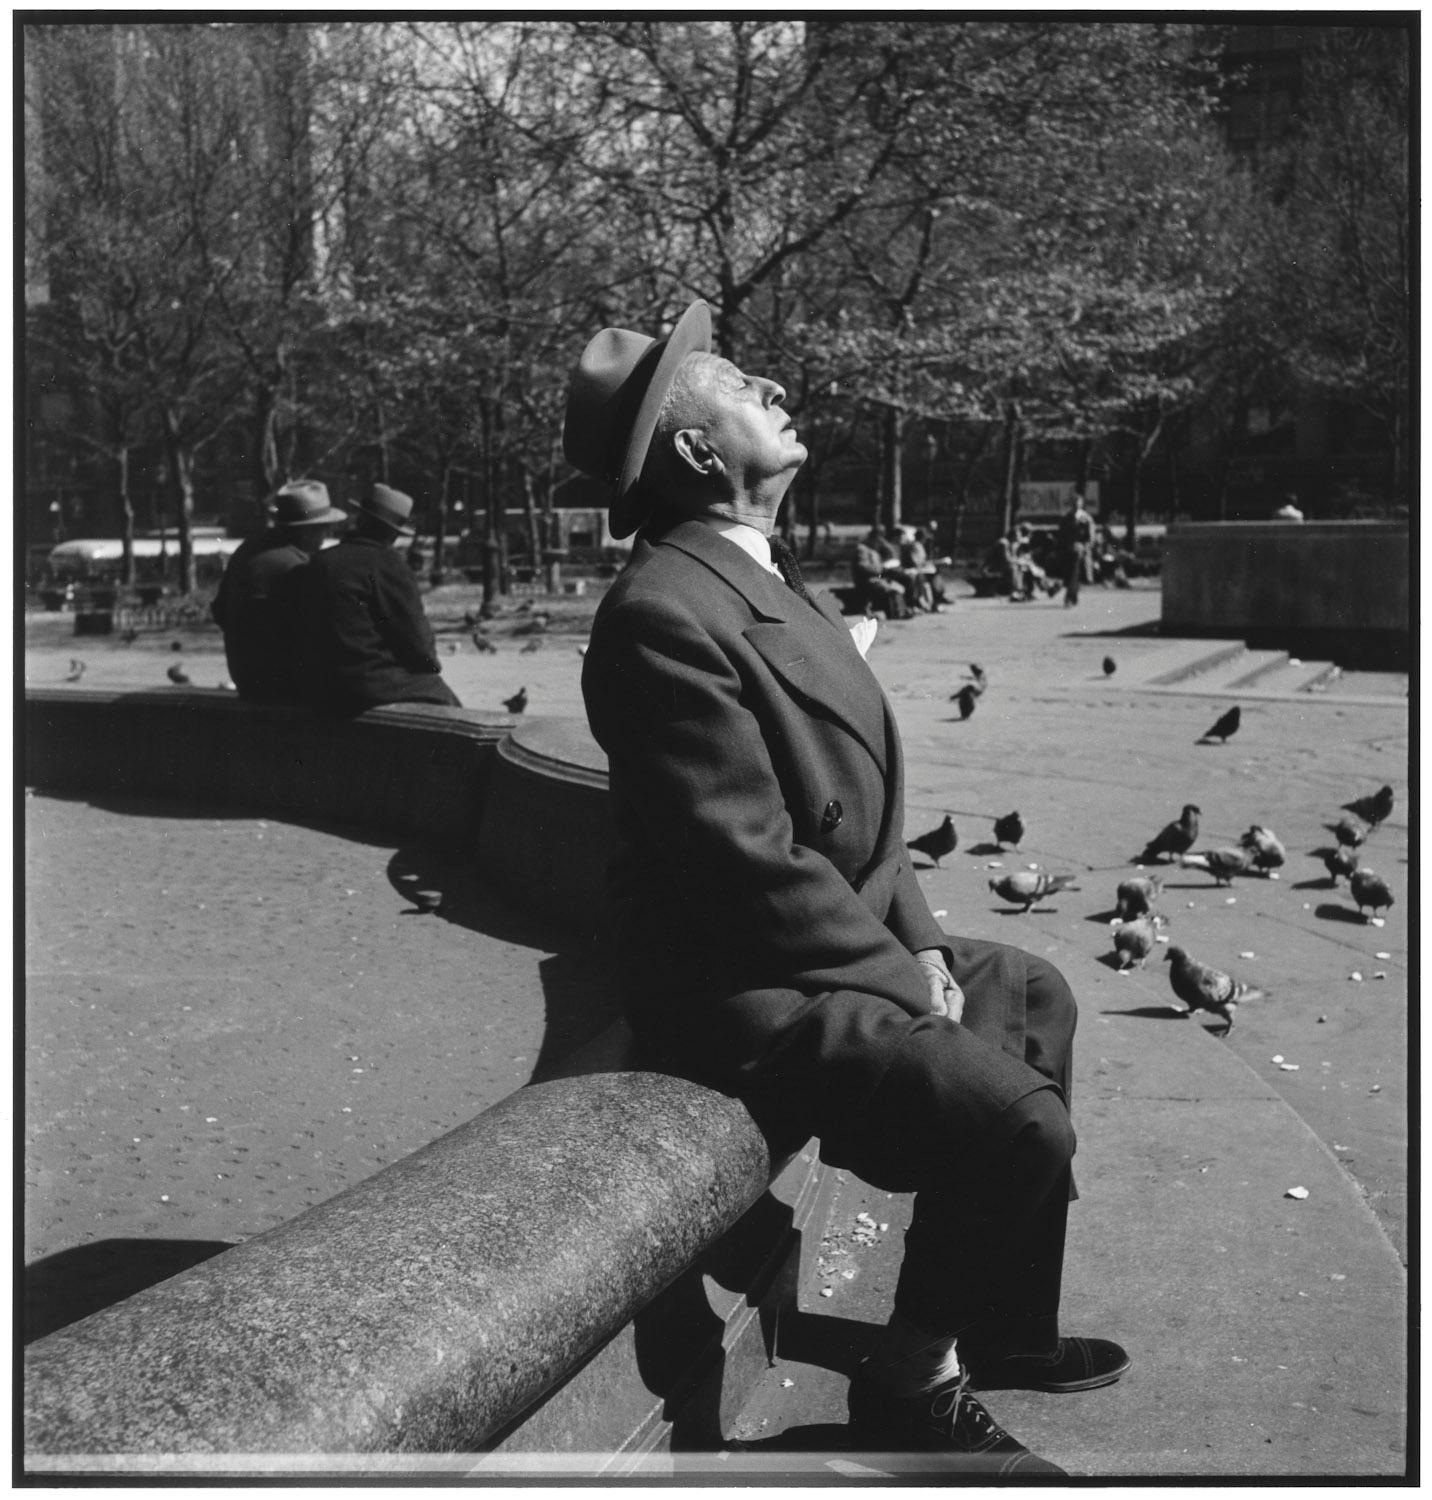 USA, New York City, 1948 - Elliott Erwitt (Schwarz-Weiß-Fotografie)
Signiert, mit Titel bezeichnet und datiert auf dem beiliegenden Label des Künstlers
Silbergelatineabzug, später gedruckt

Erhältlich in vier Größen:
11 x 14 Zoll
16 x 20 Zoll
20 x